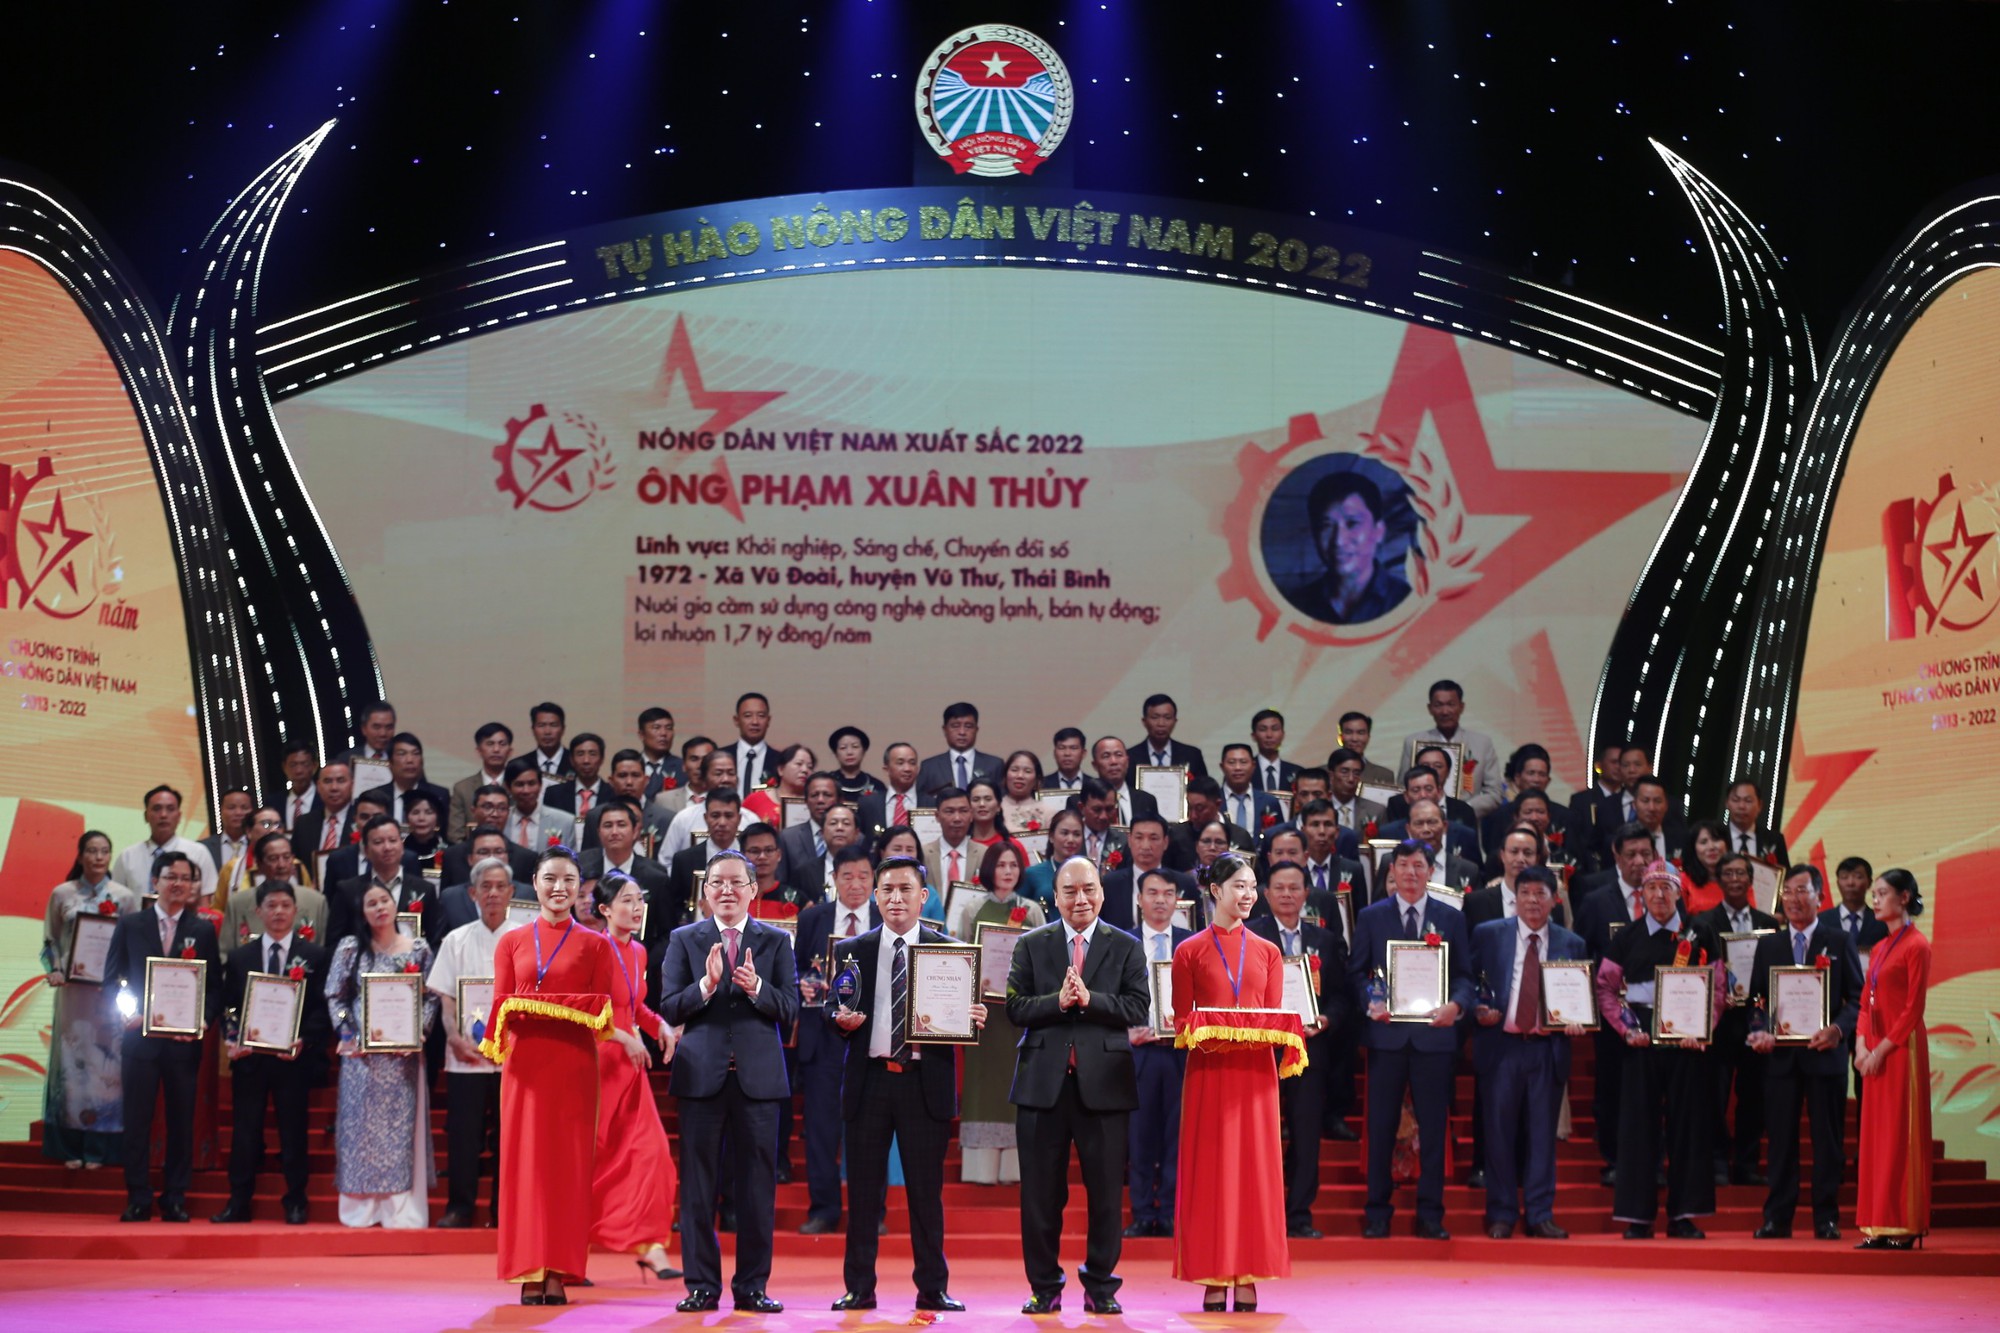 Toàn văn bài phát biểu của Chủ tịch nước Nguyễn Xuân Phúc tại Lễ tôn vinh Nông dân Việt Nam xuất sắc 2022 - Ảnh 3.